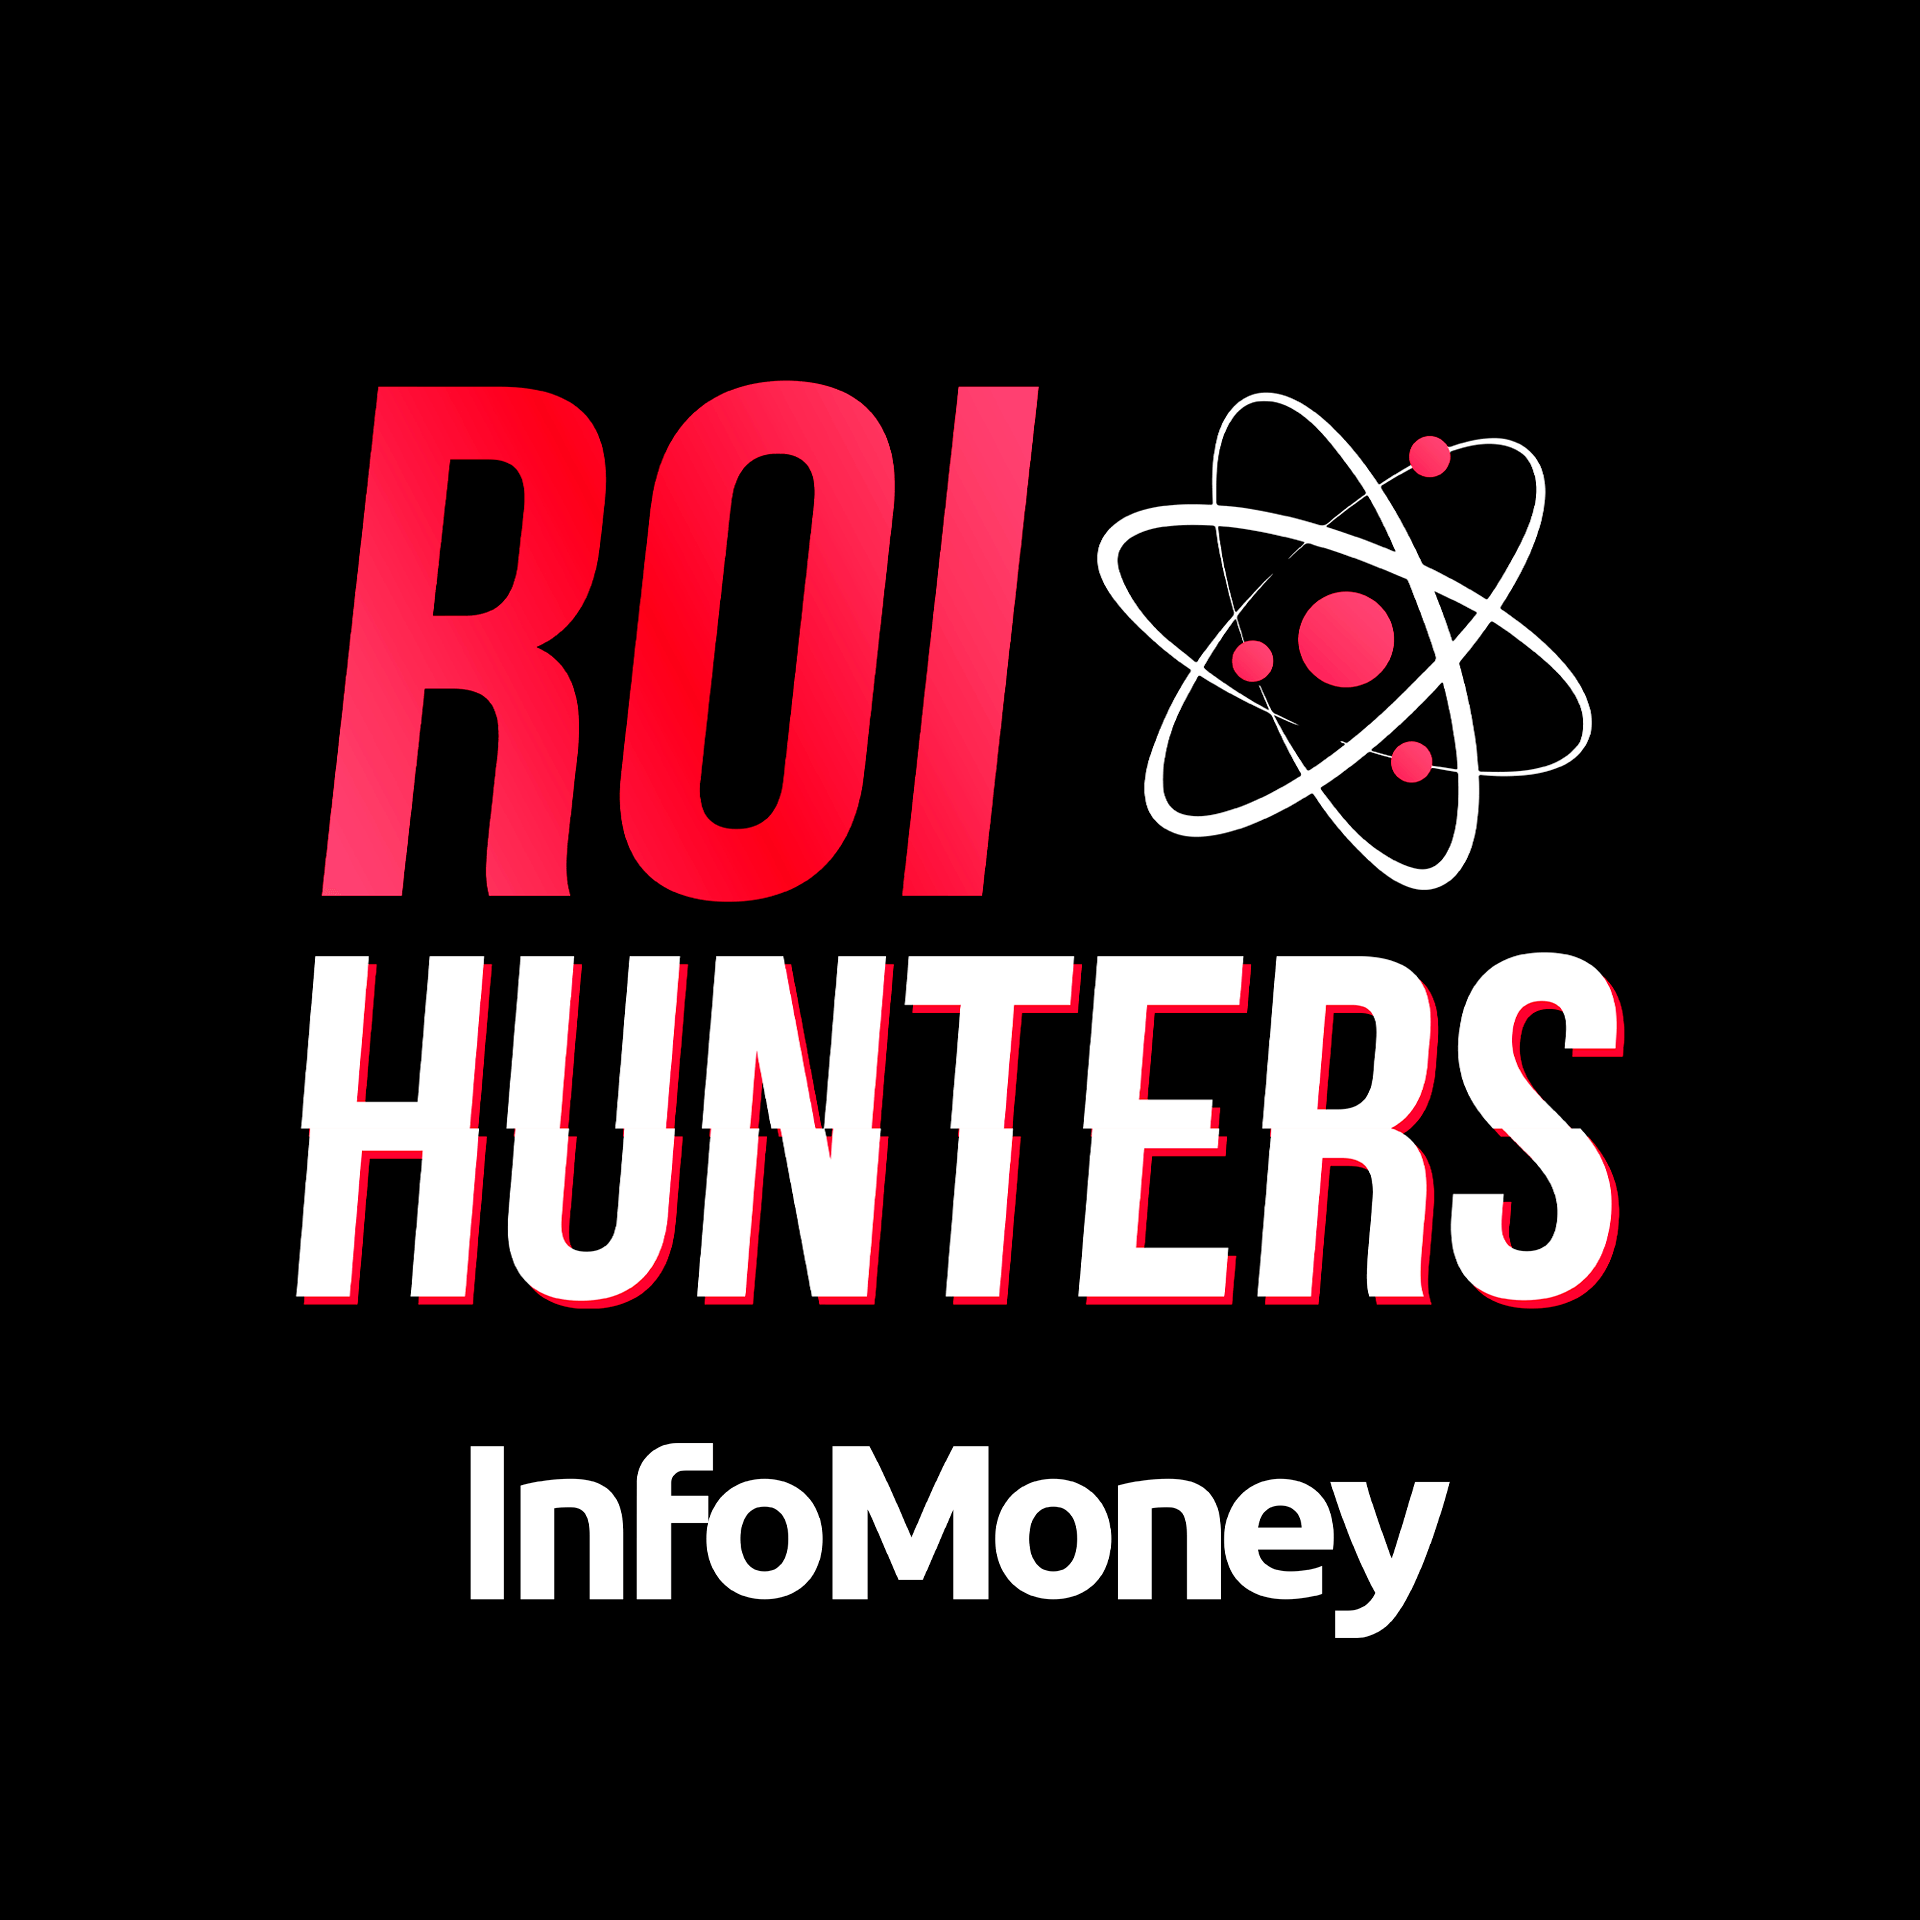 InfoMoney | Web Analytics é muito mais que um gráfico bonitinho | ROI Hunters Ep. #130